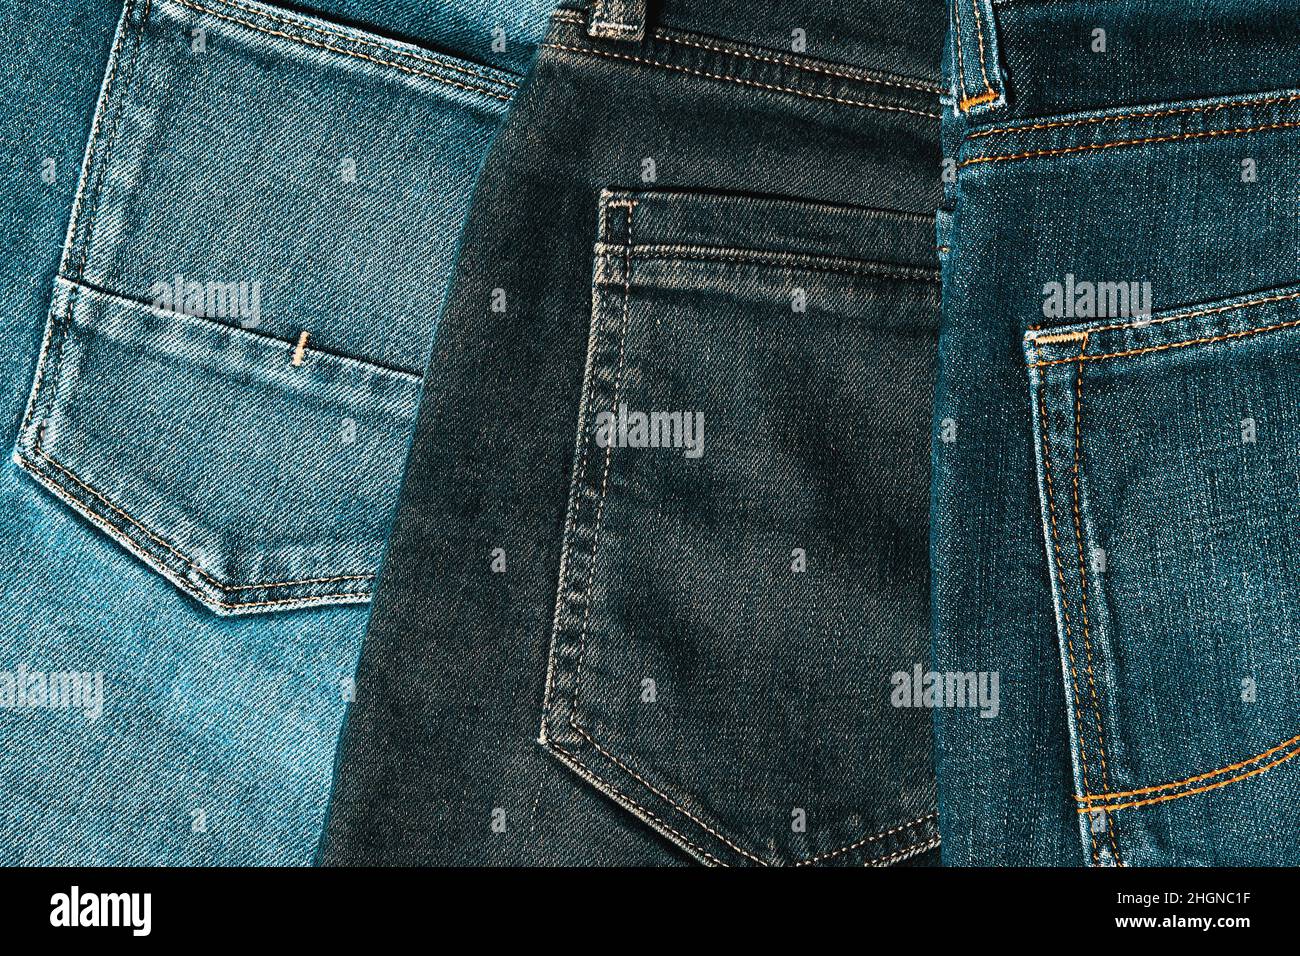 Un tas de jeans indigo a tourné les poches arrière sur le bureau de la boutique.Vêtements et fonds textiles.Image aux tons chauds Banque D'Images